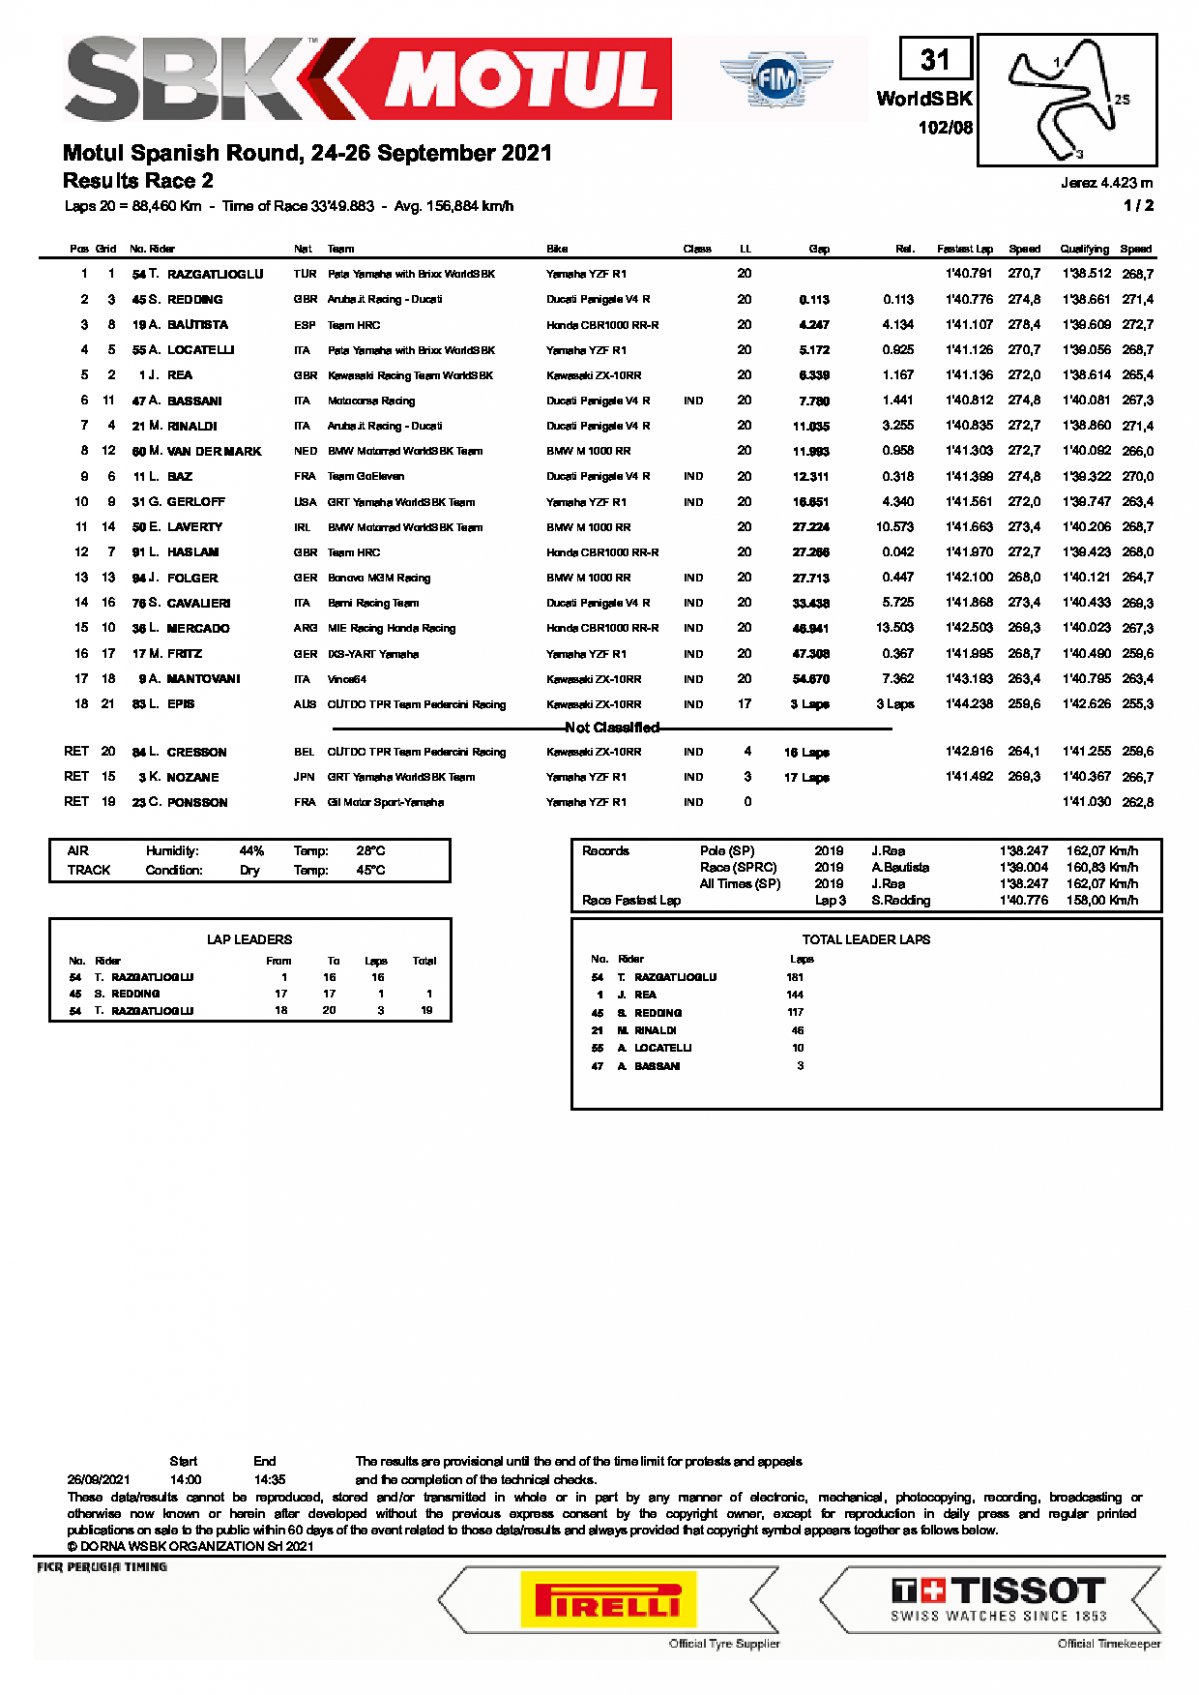 Результаты 2-й гонки WorldSBK, Circuito de Jerez (26/09/2021)